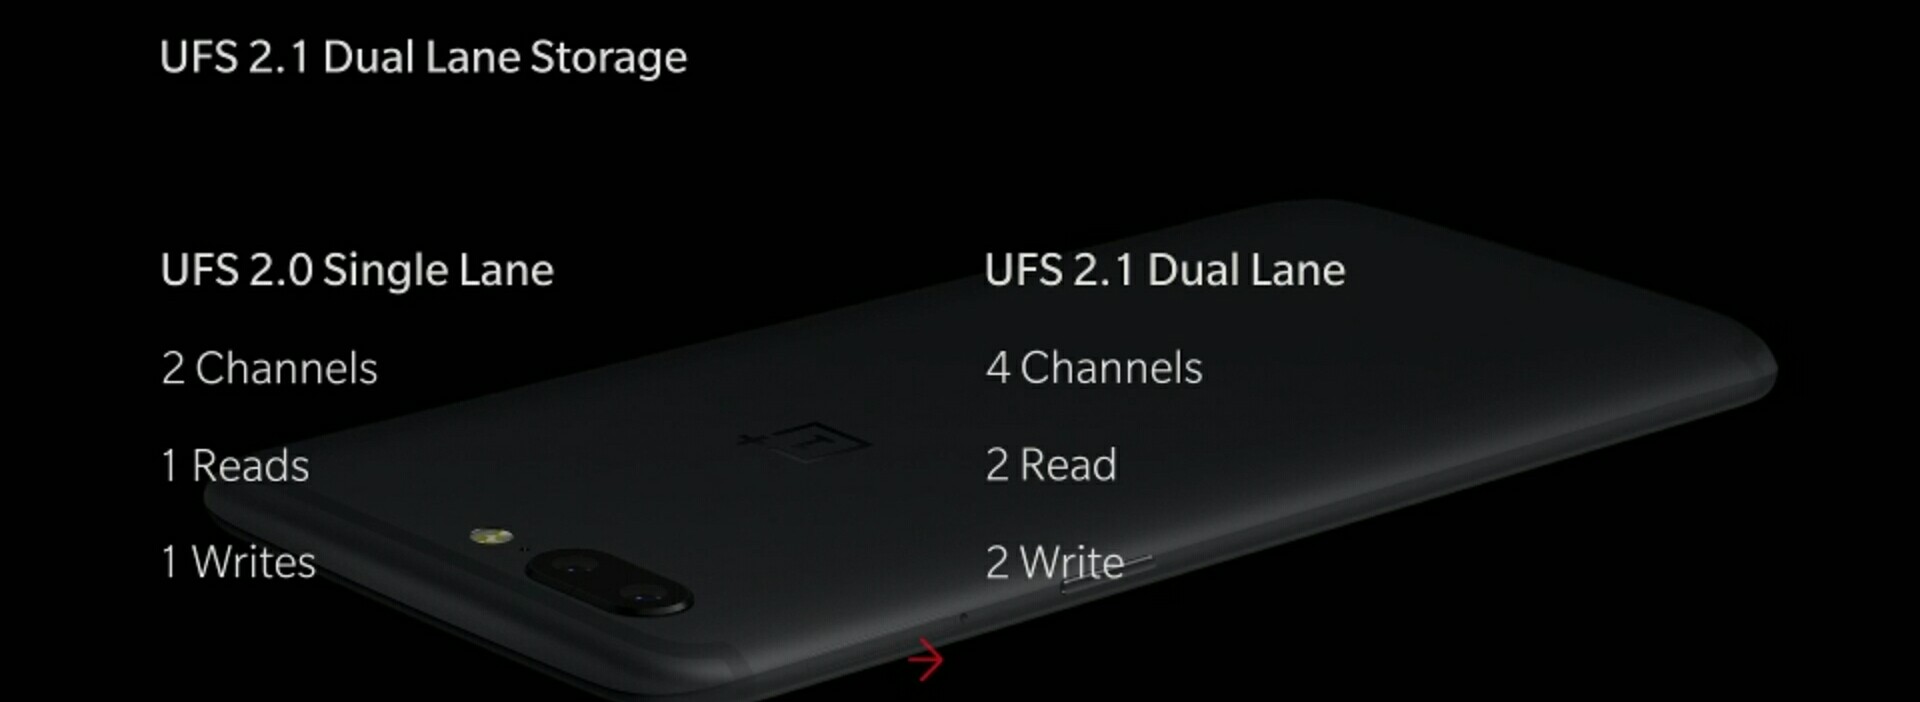 OnePlus 5 Dual Lane